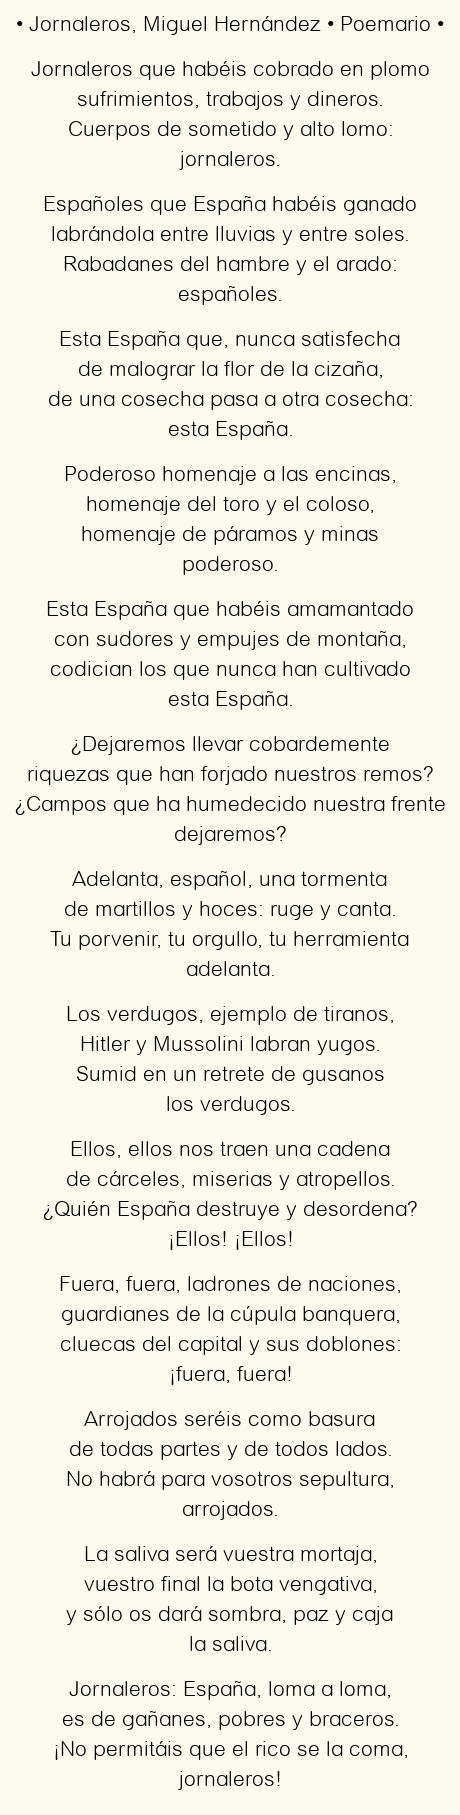 Imagen con el poema Jornaleros, por Miguel Hernández